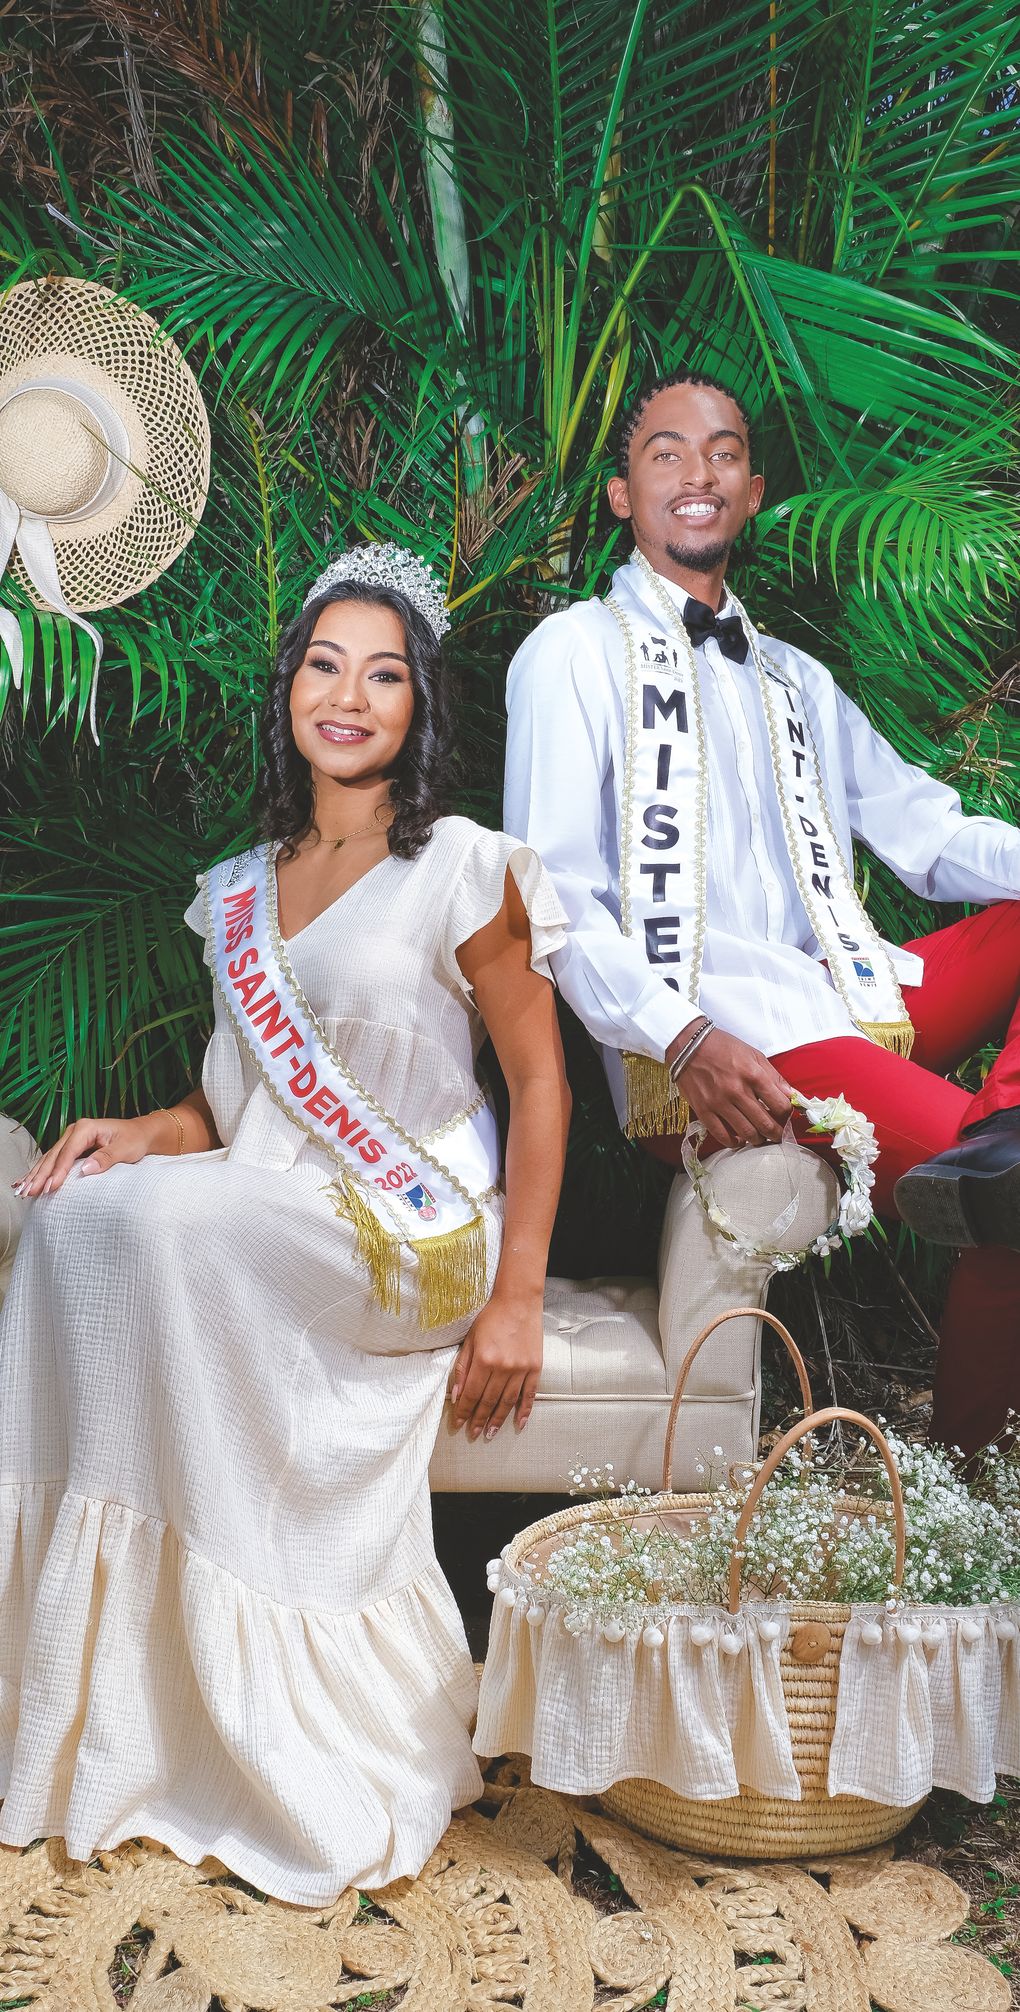 Miss et Mister Saint-Denis 2022, représentants de la jeunesse dionysienne